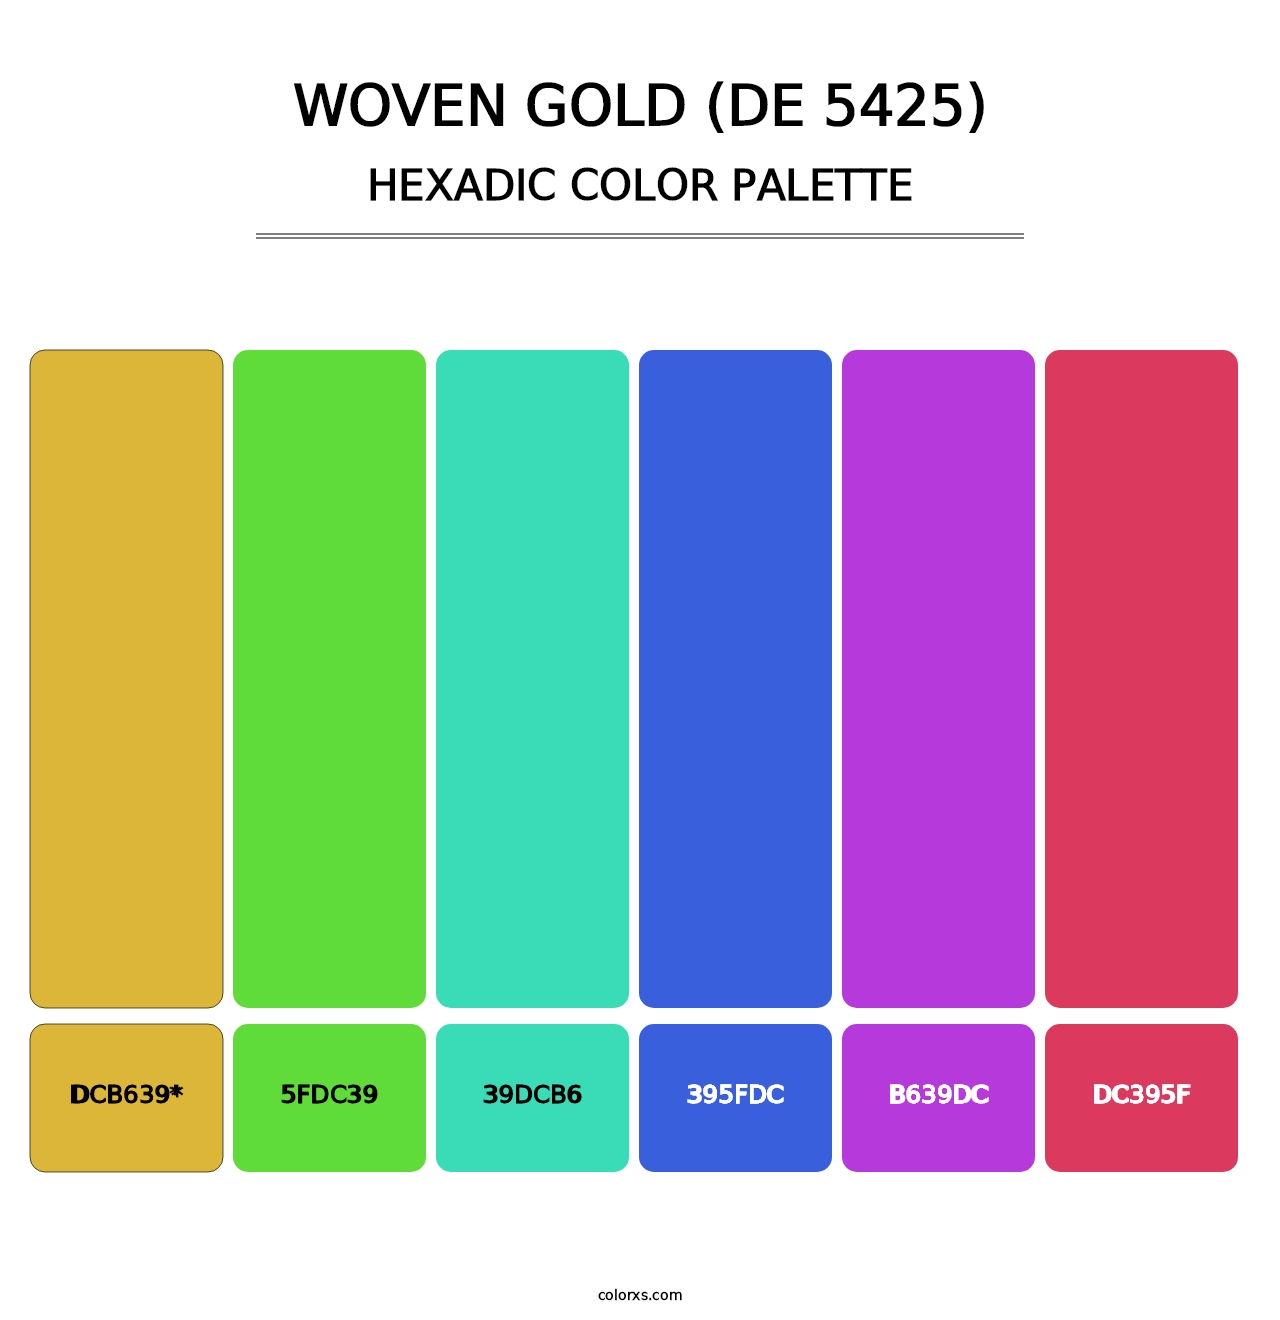 Woven Gold (DE 5425) - Hexadic Color Palette